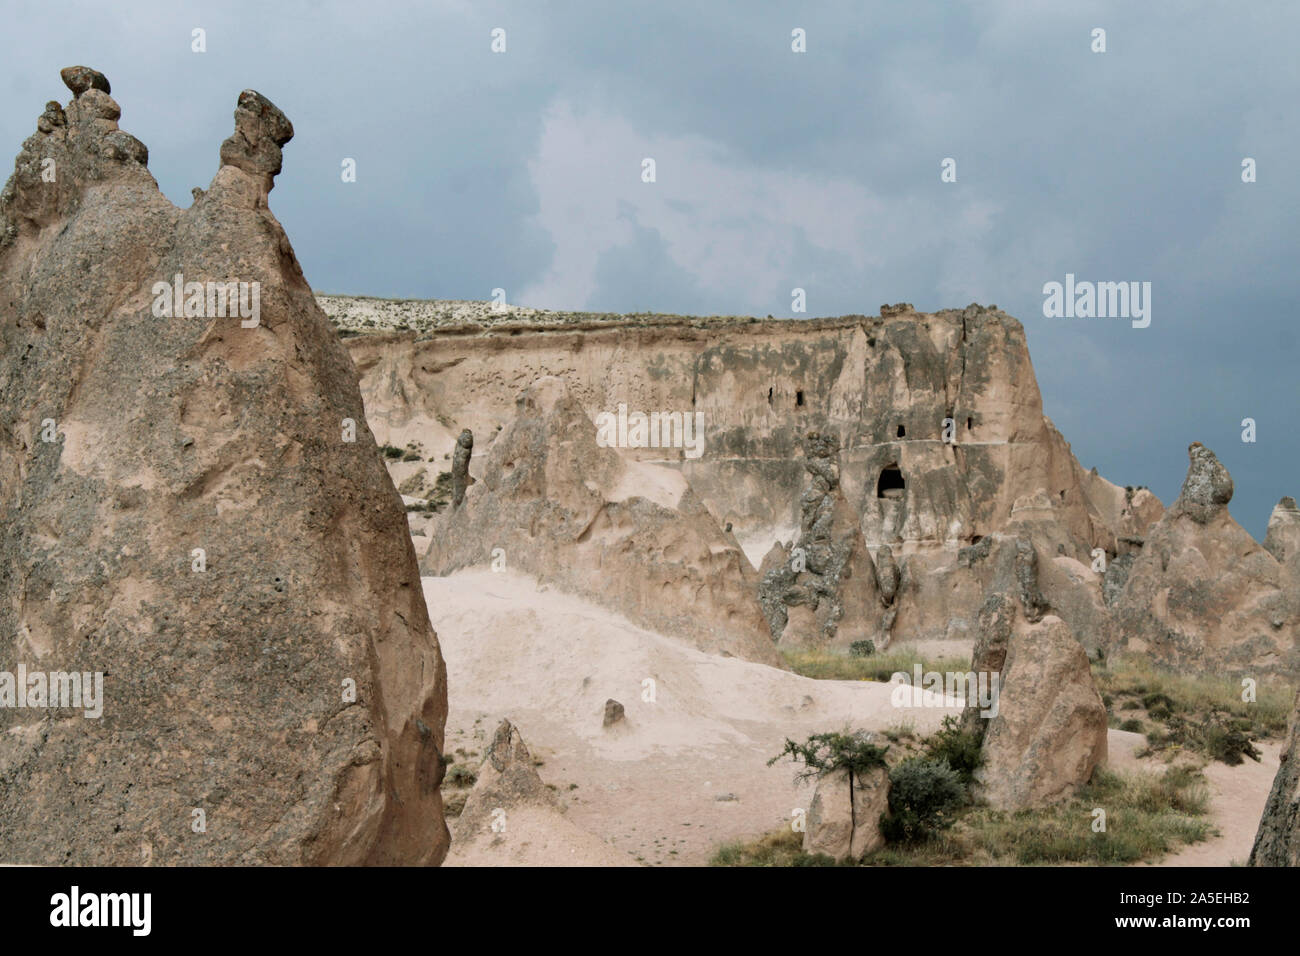 Le colline rocciose di forme diverse in una popolare destinazione di viaggio - Cappadocia, Turchia Foto Stock